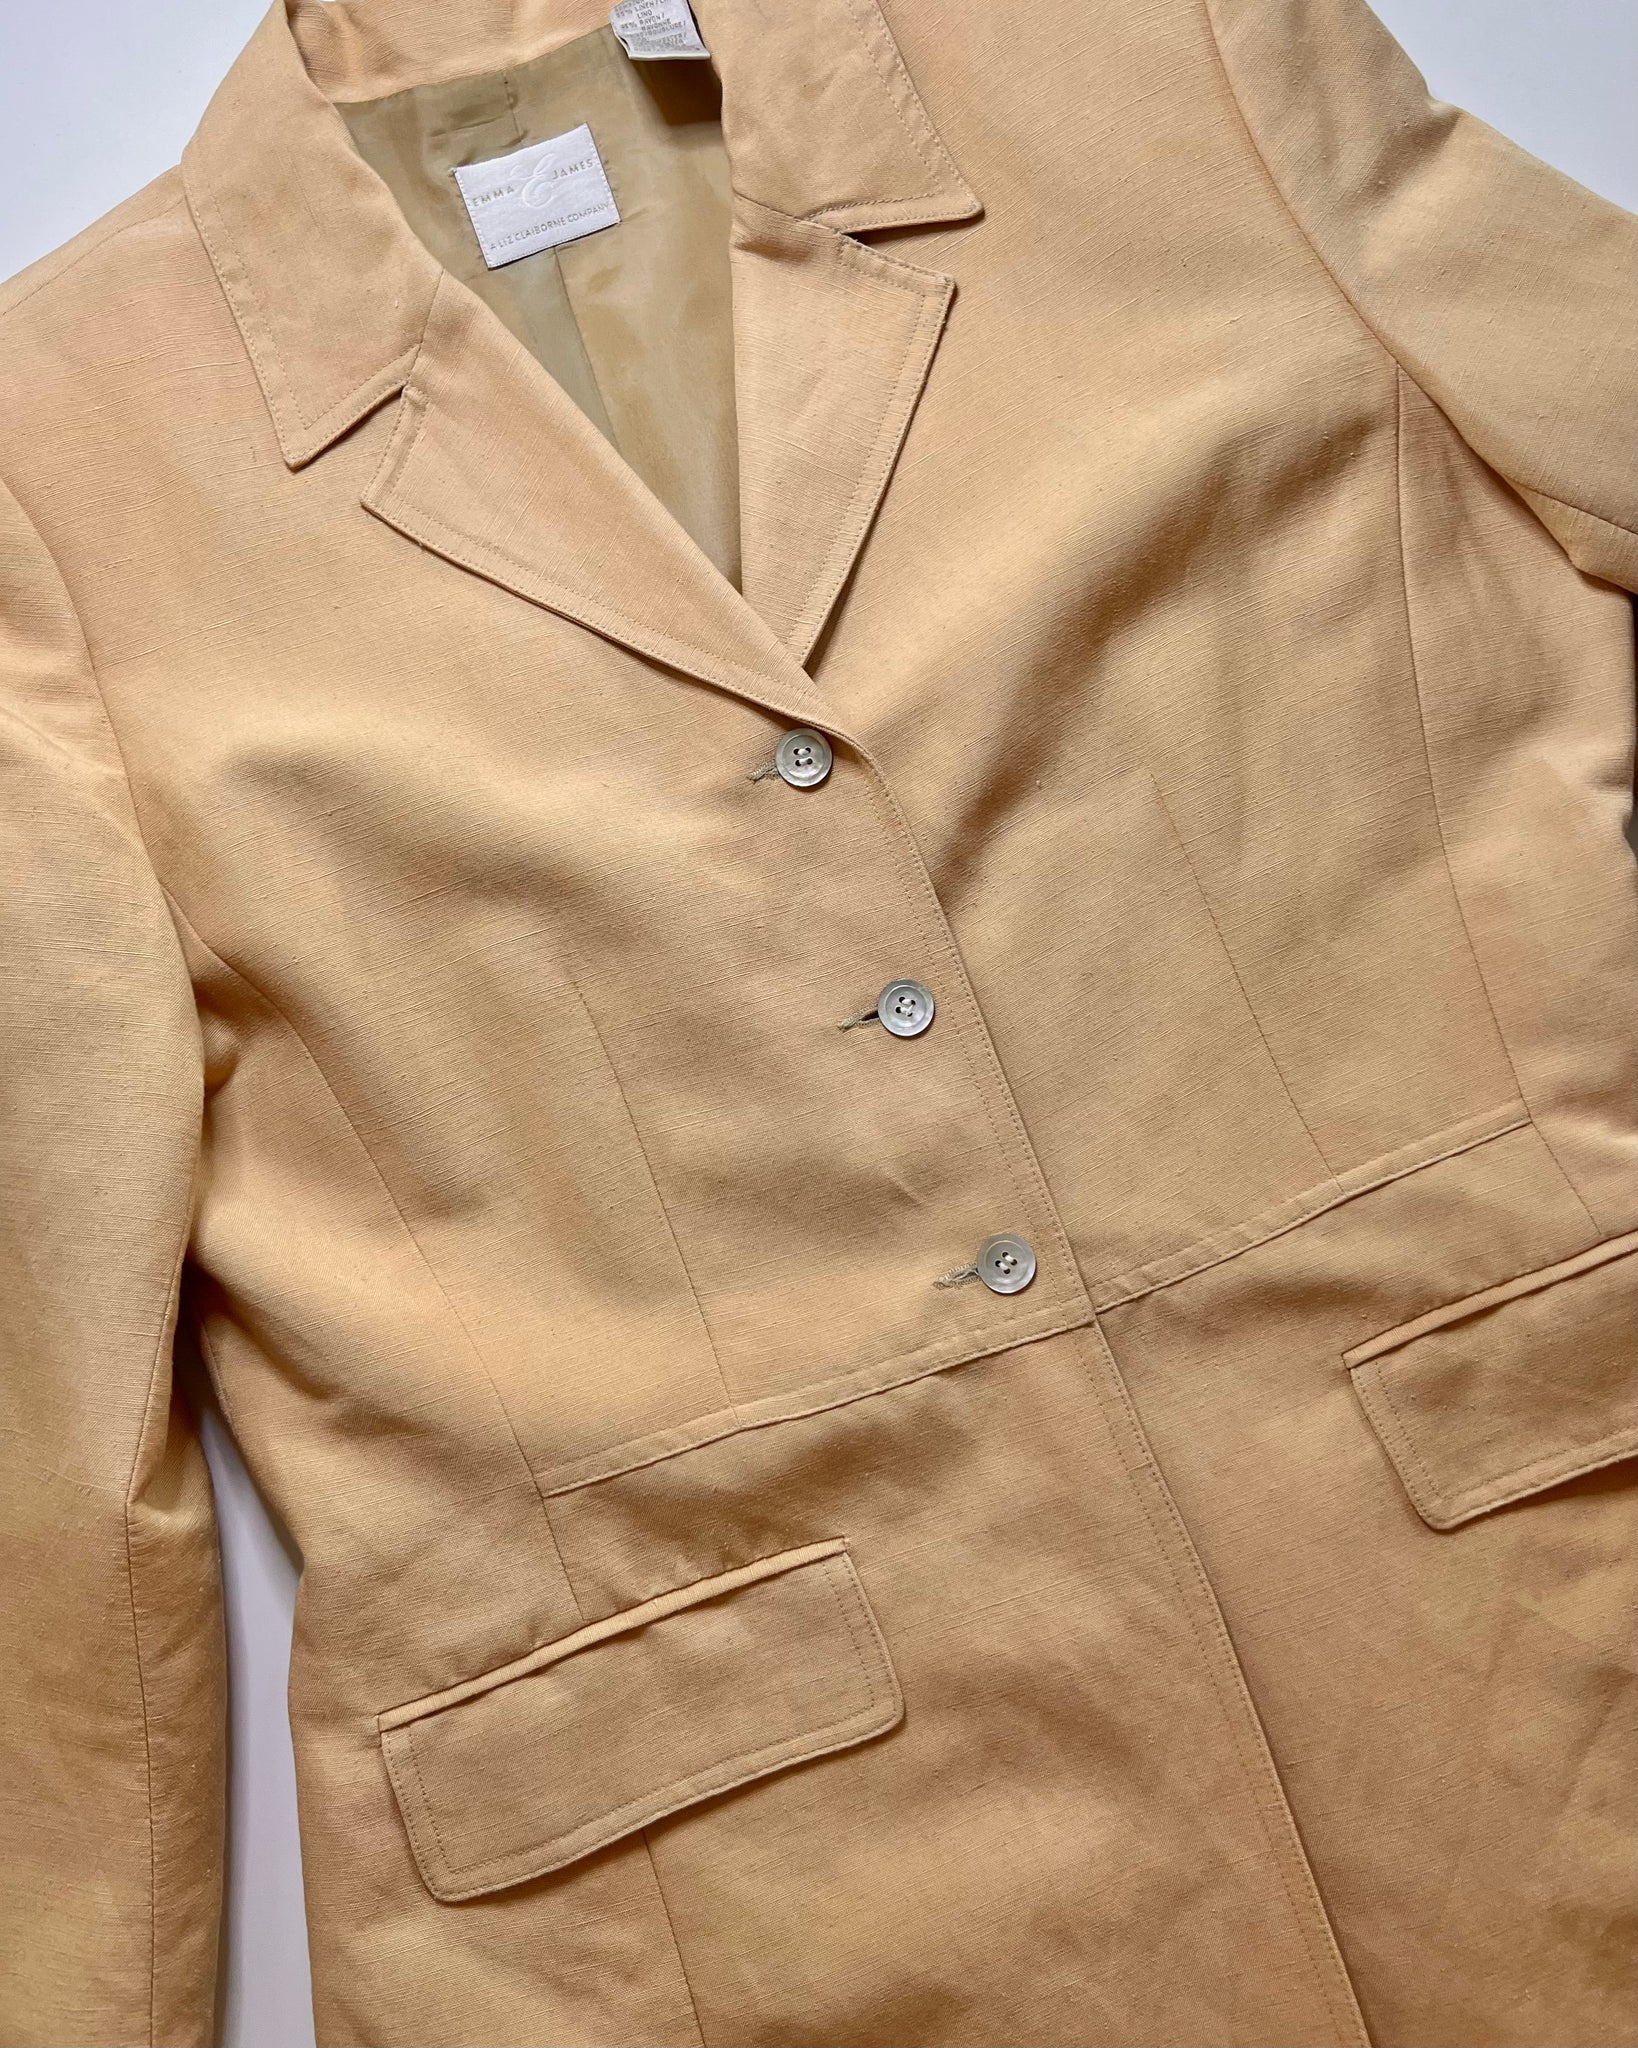 90s Pale Yellow Linen Blazer (Size 10)